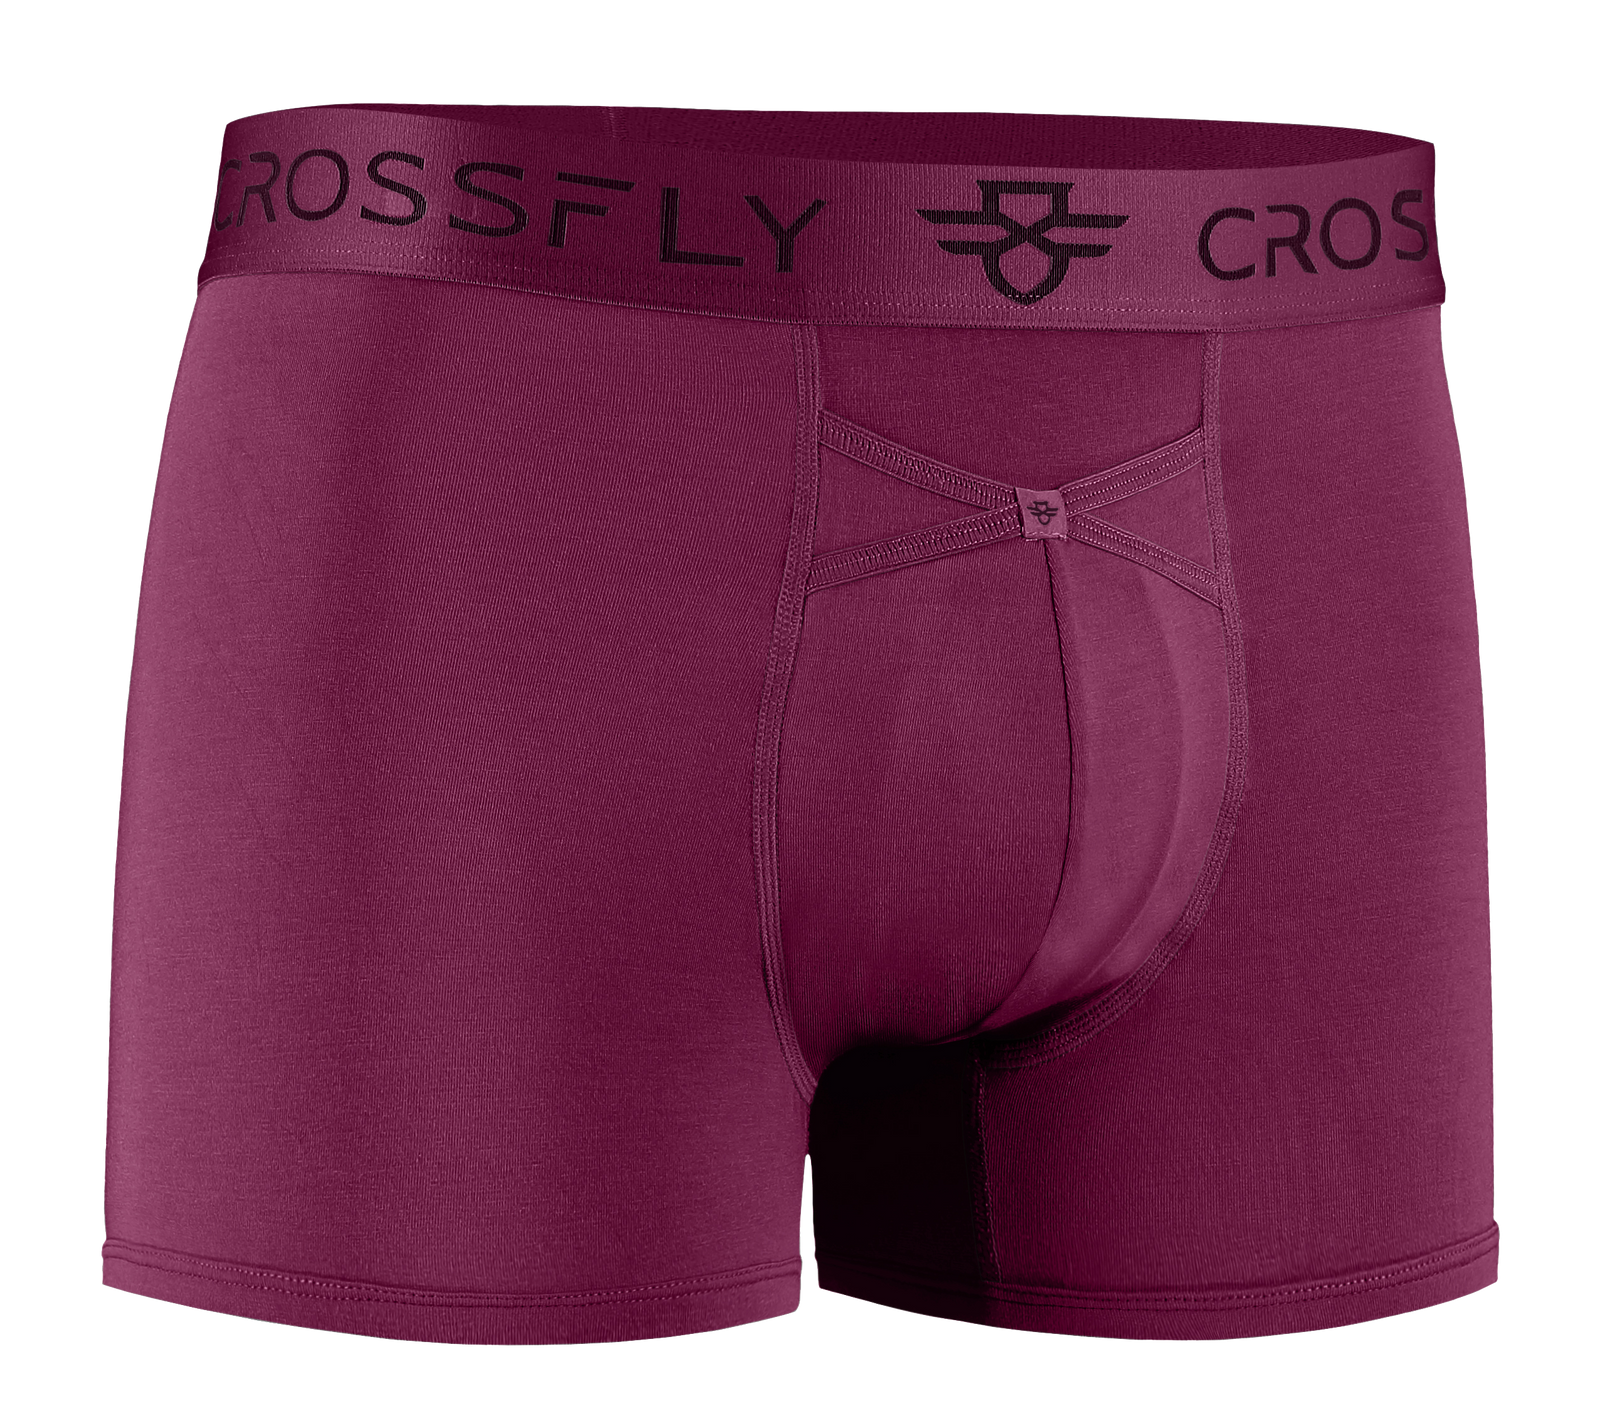 Crossfly Men's Underwear IKON X 3 Trunk Silver/Grey Modal